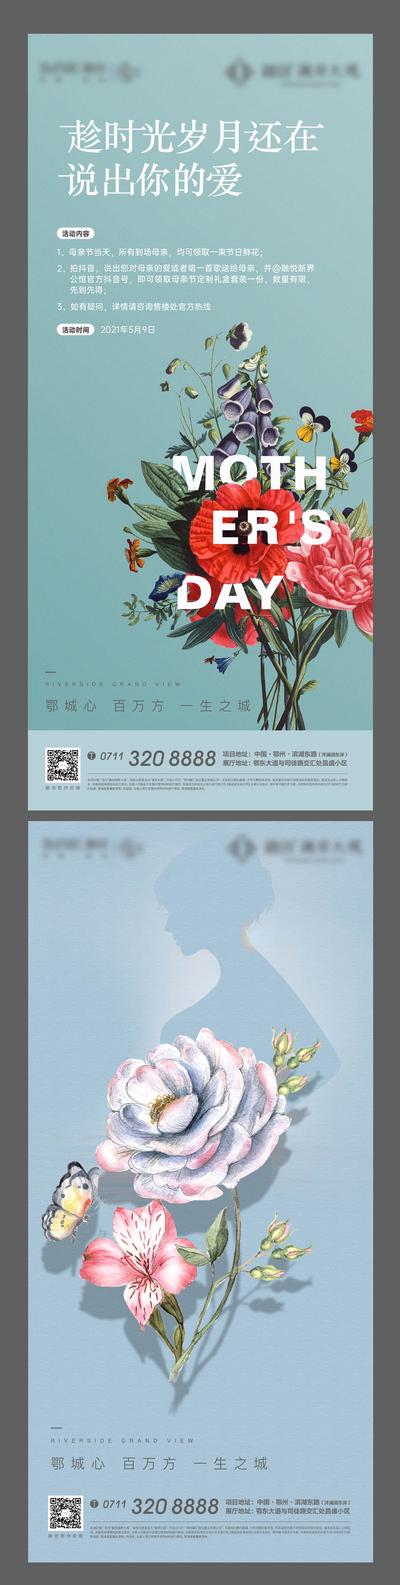 南门网 海报 房地产 公历节日 母亲节 插花 花卉 DIY 活动